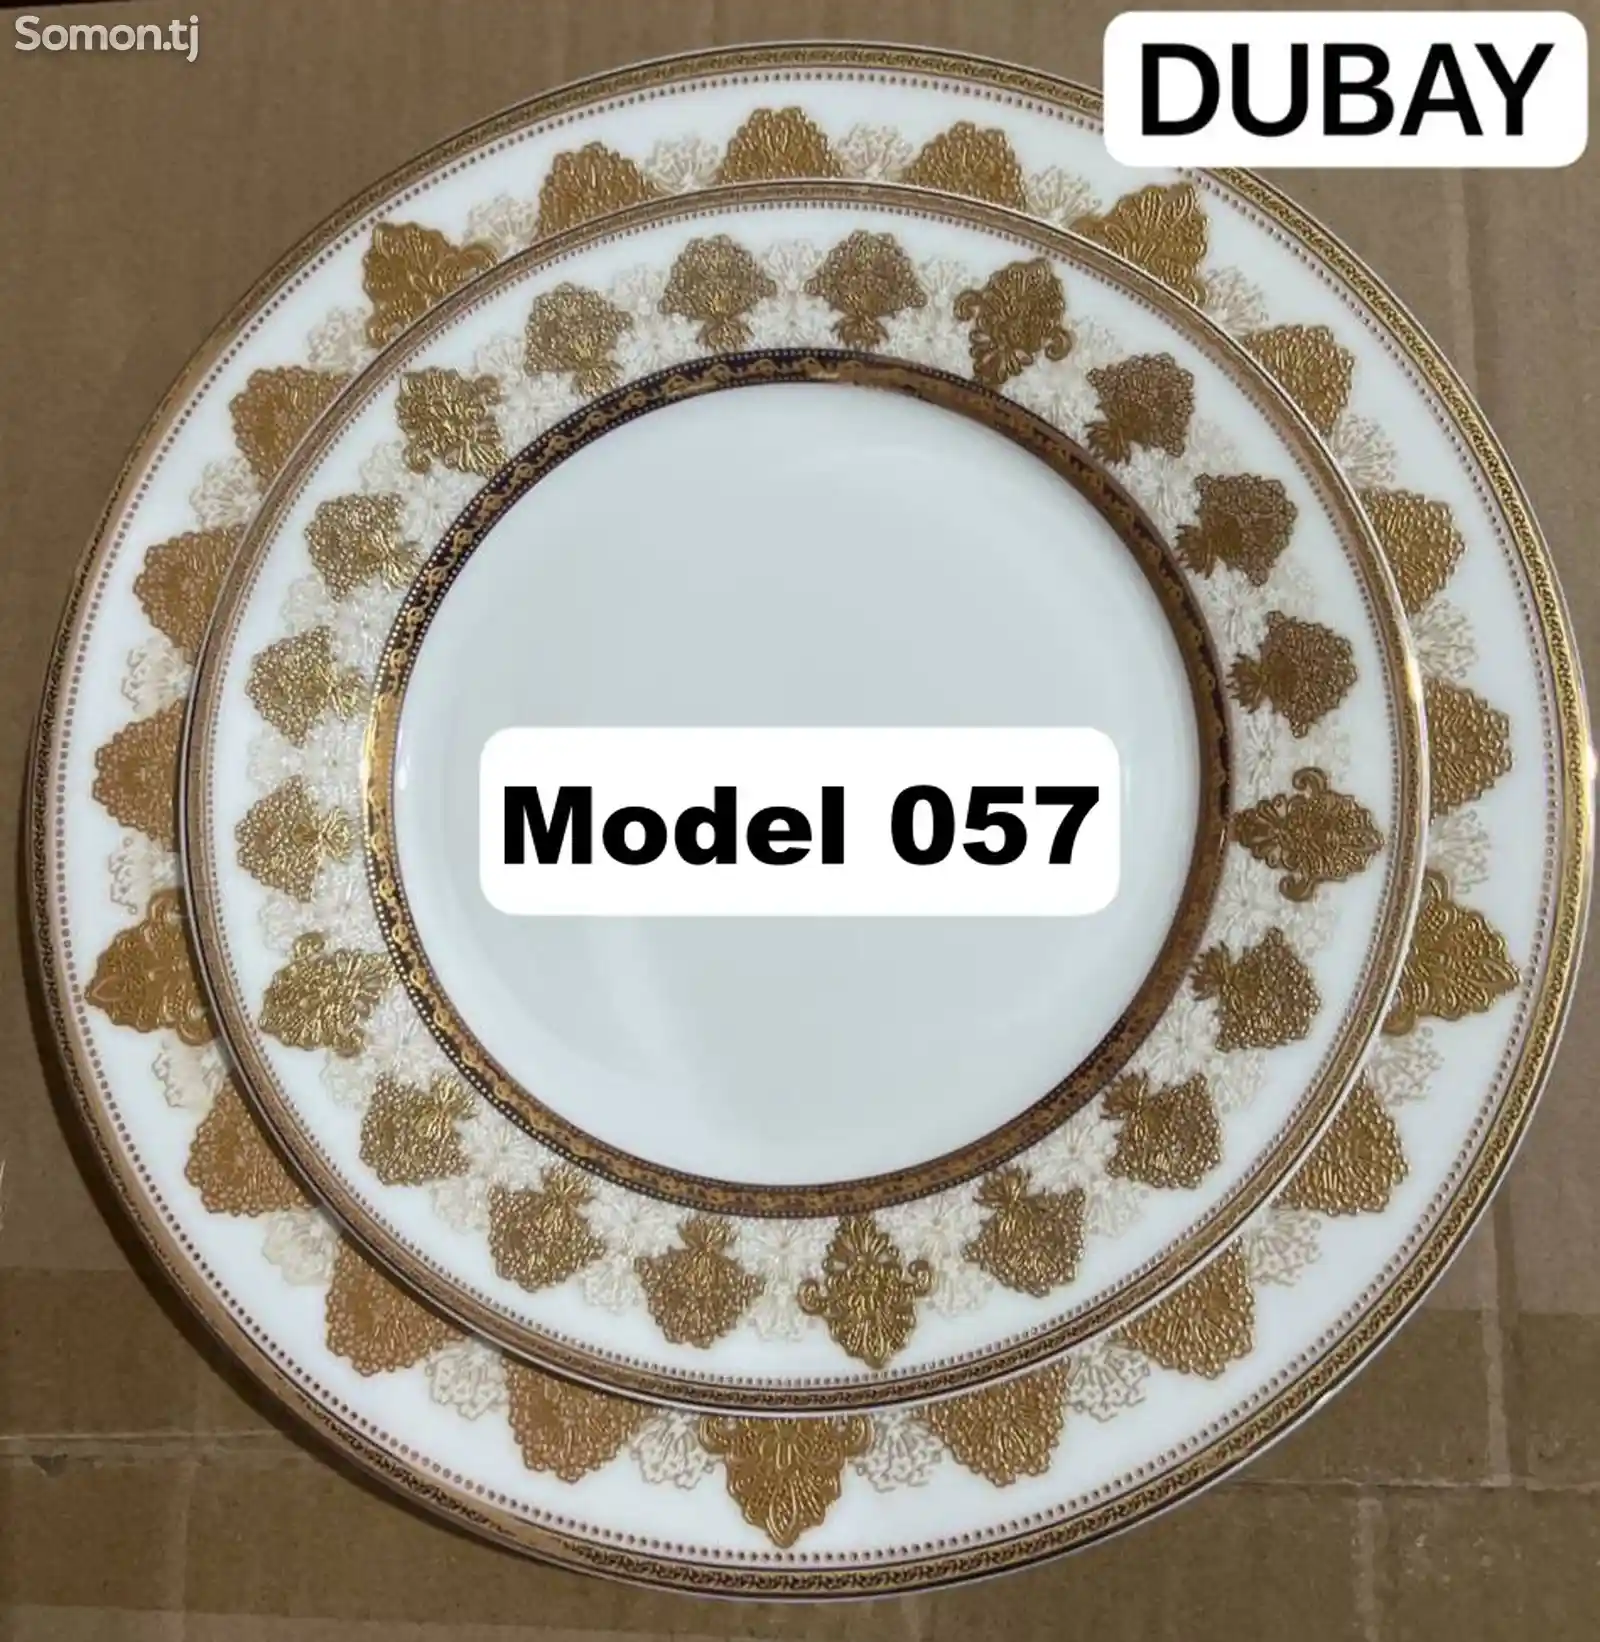 Набор посуды Dubay модель 057